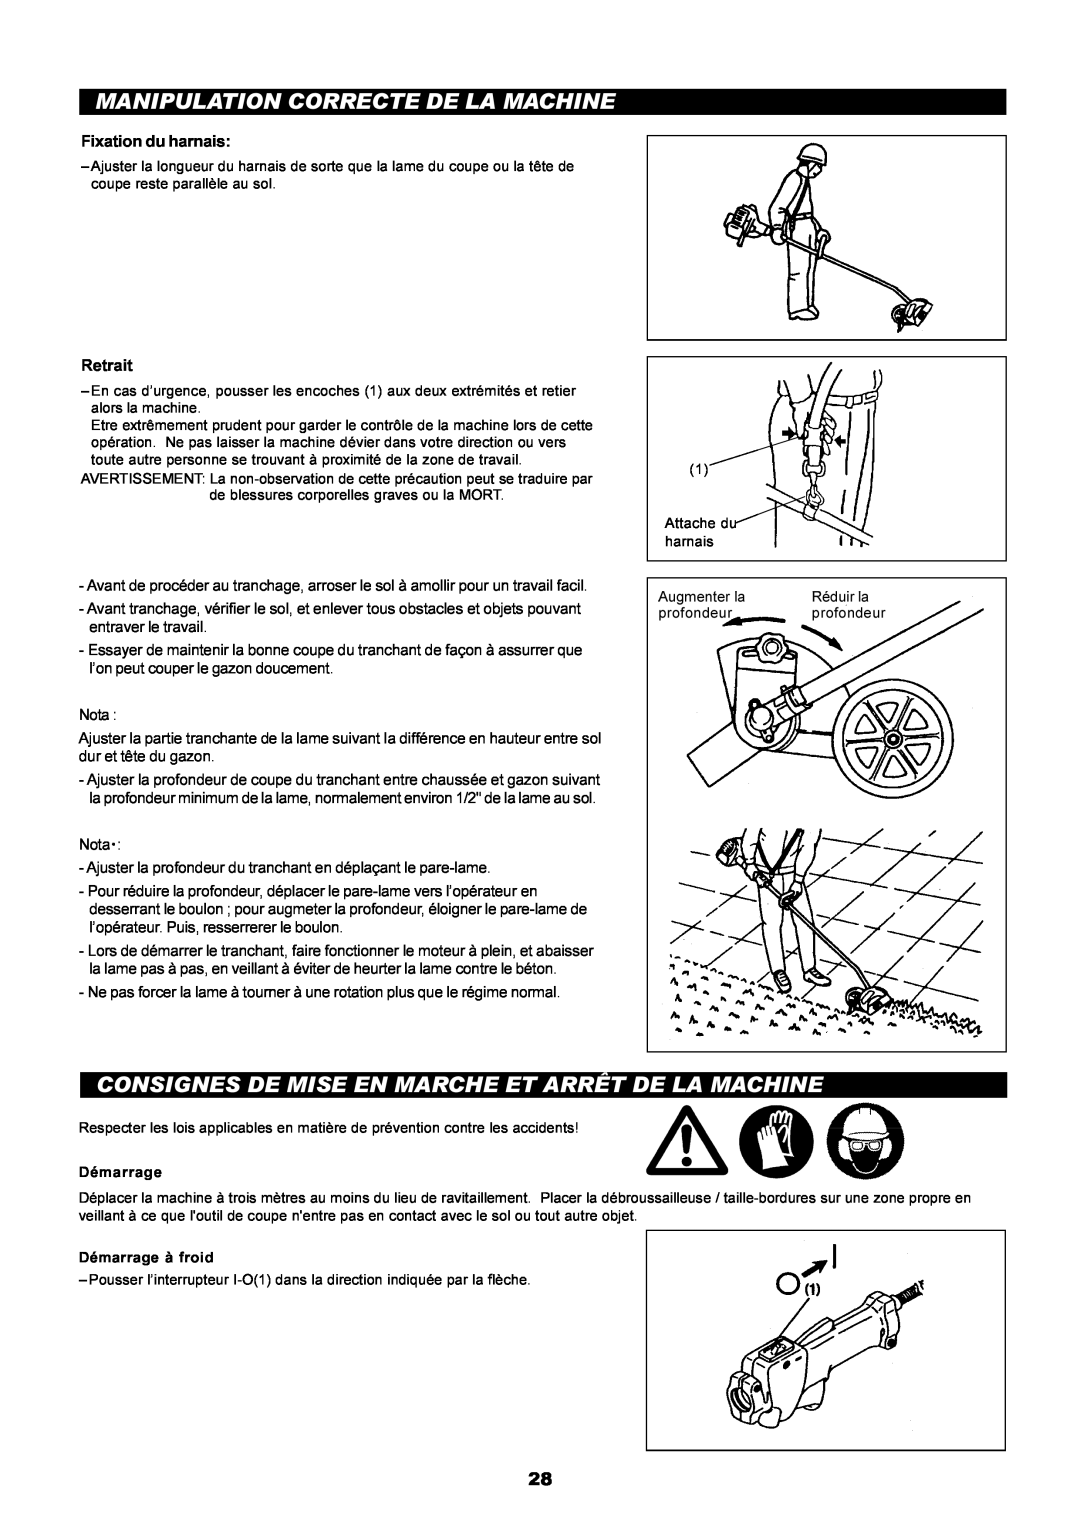 Dolmar PE-251 instruction manual Manipulation Correcte De La Machine, Fixation du harnais, Retrait 